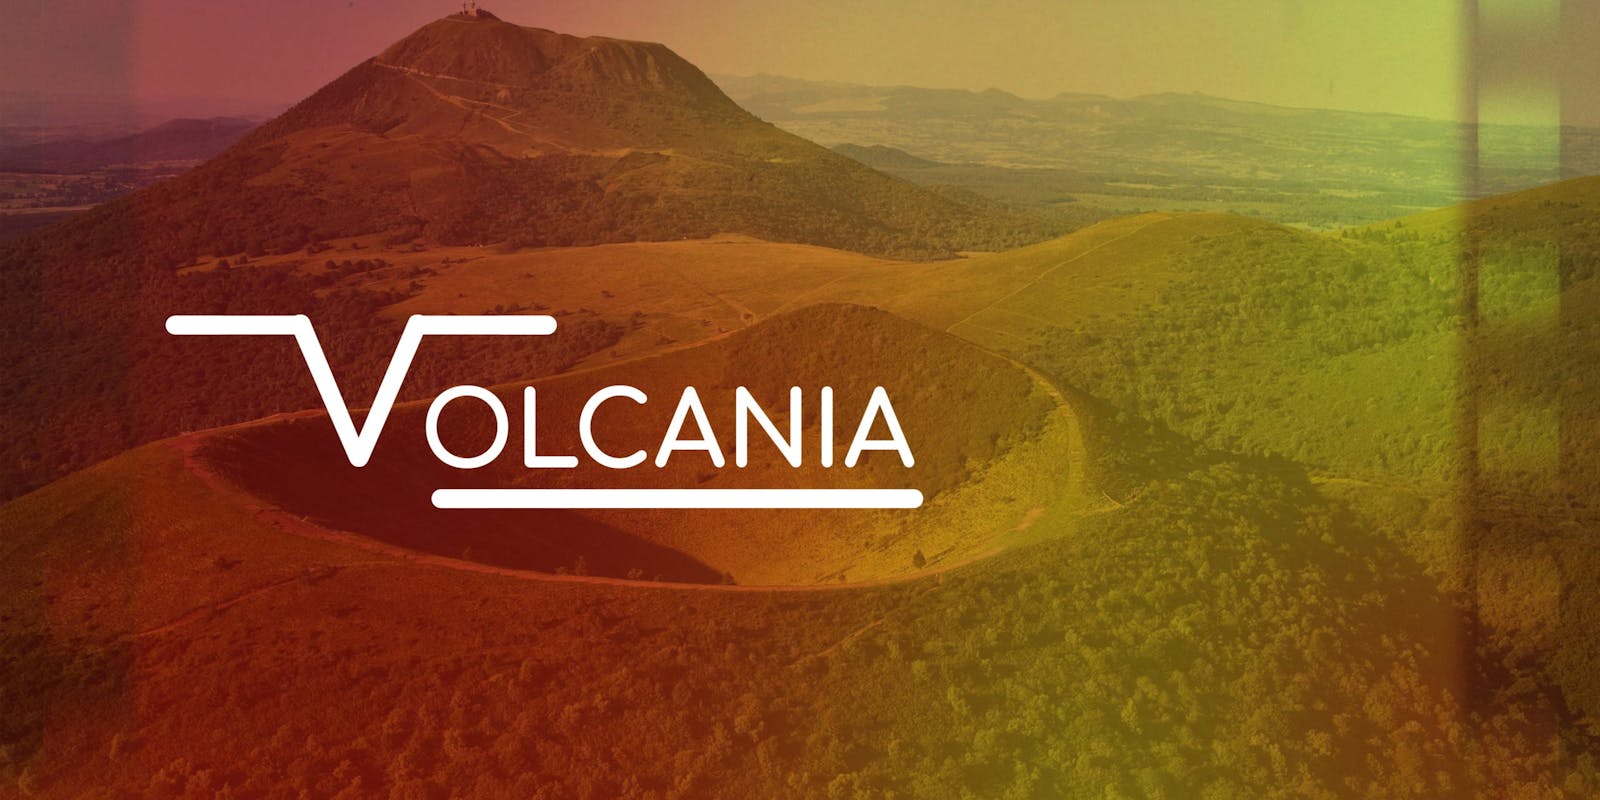 Il était une fois… le projet avorté Volcania